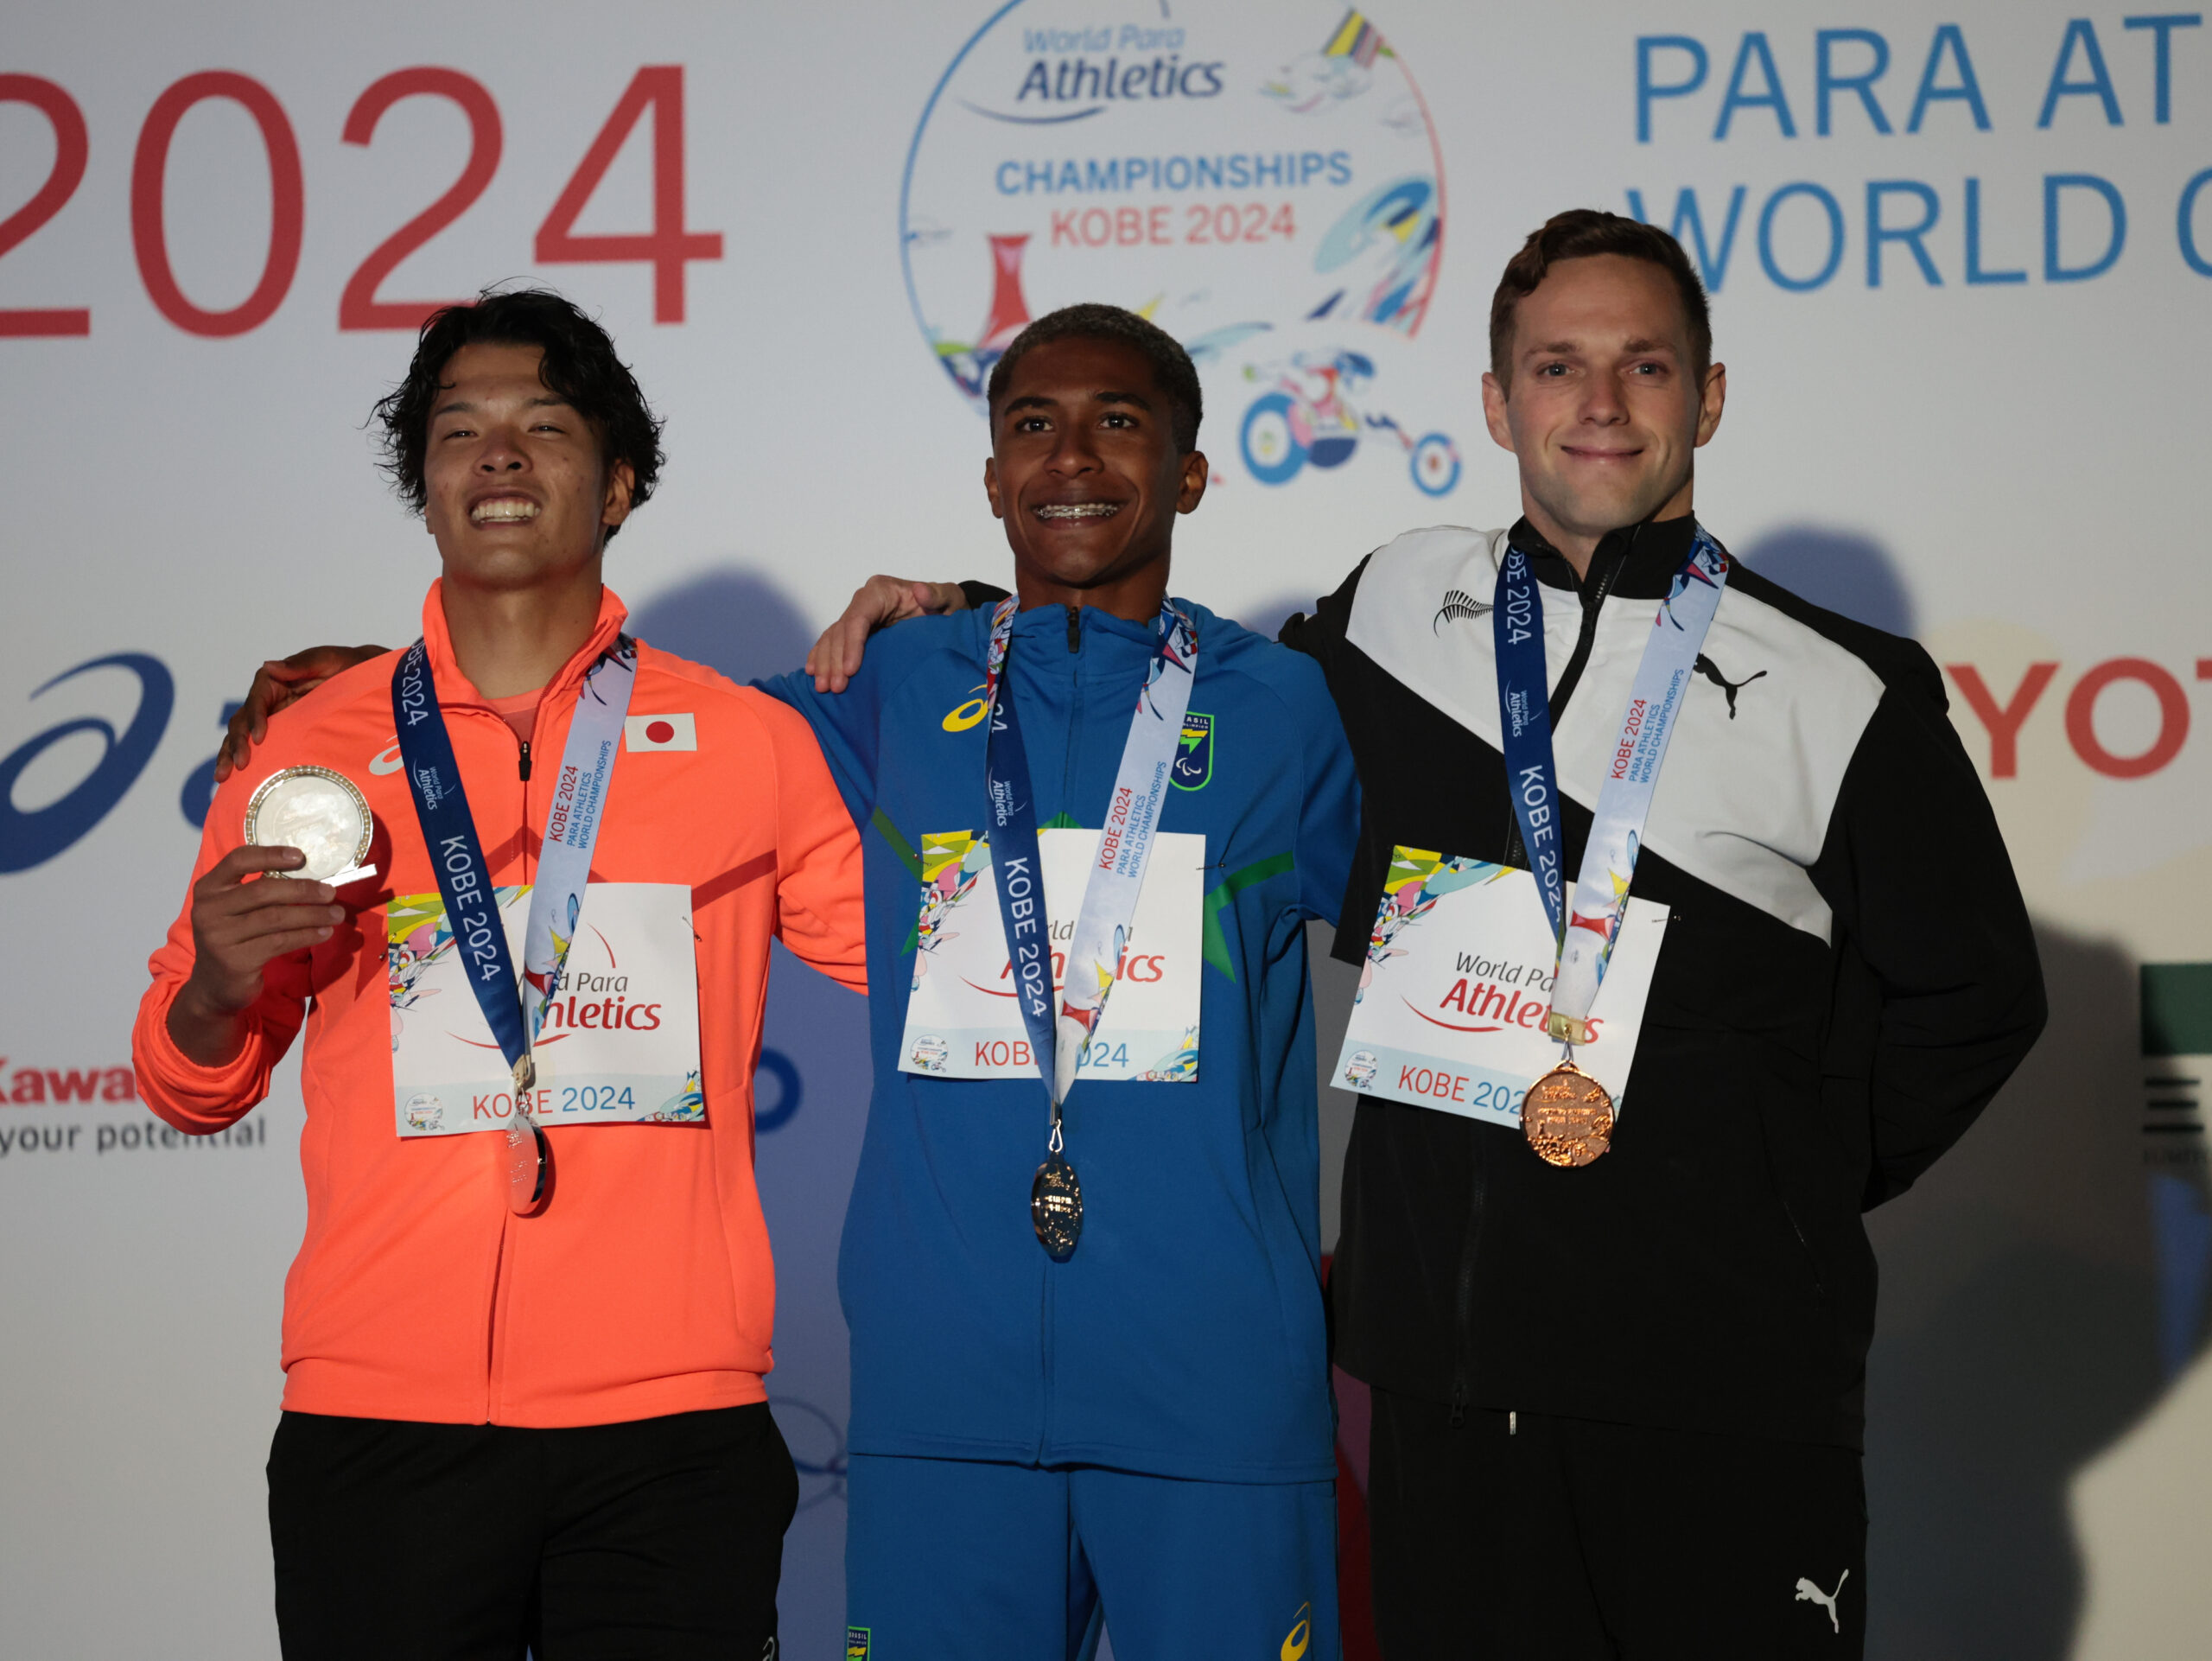 Brasil encerra melhor campanha dourada em Mundiais de atletismo com título de estreante gaúcho em Kobe